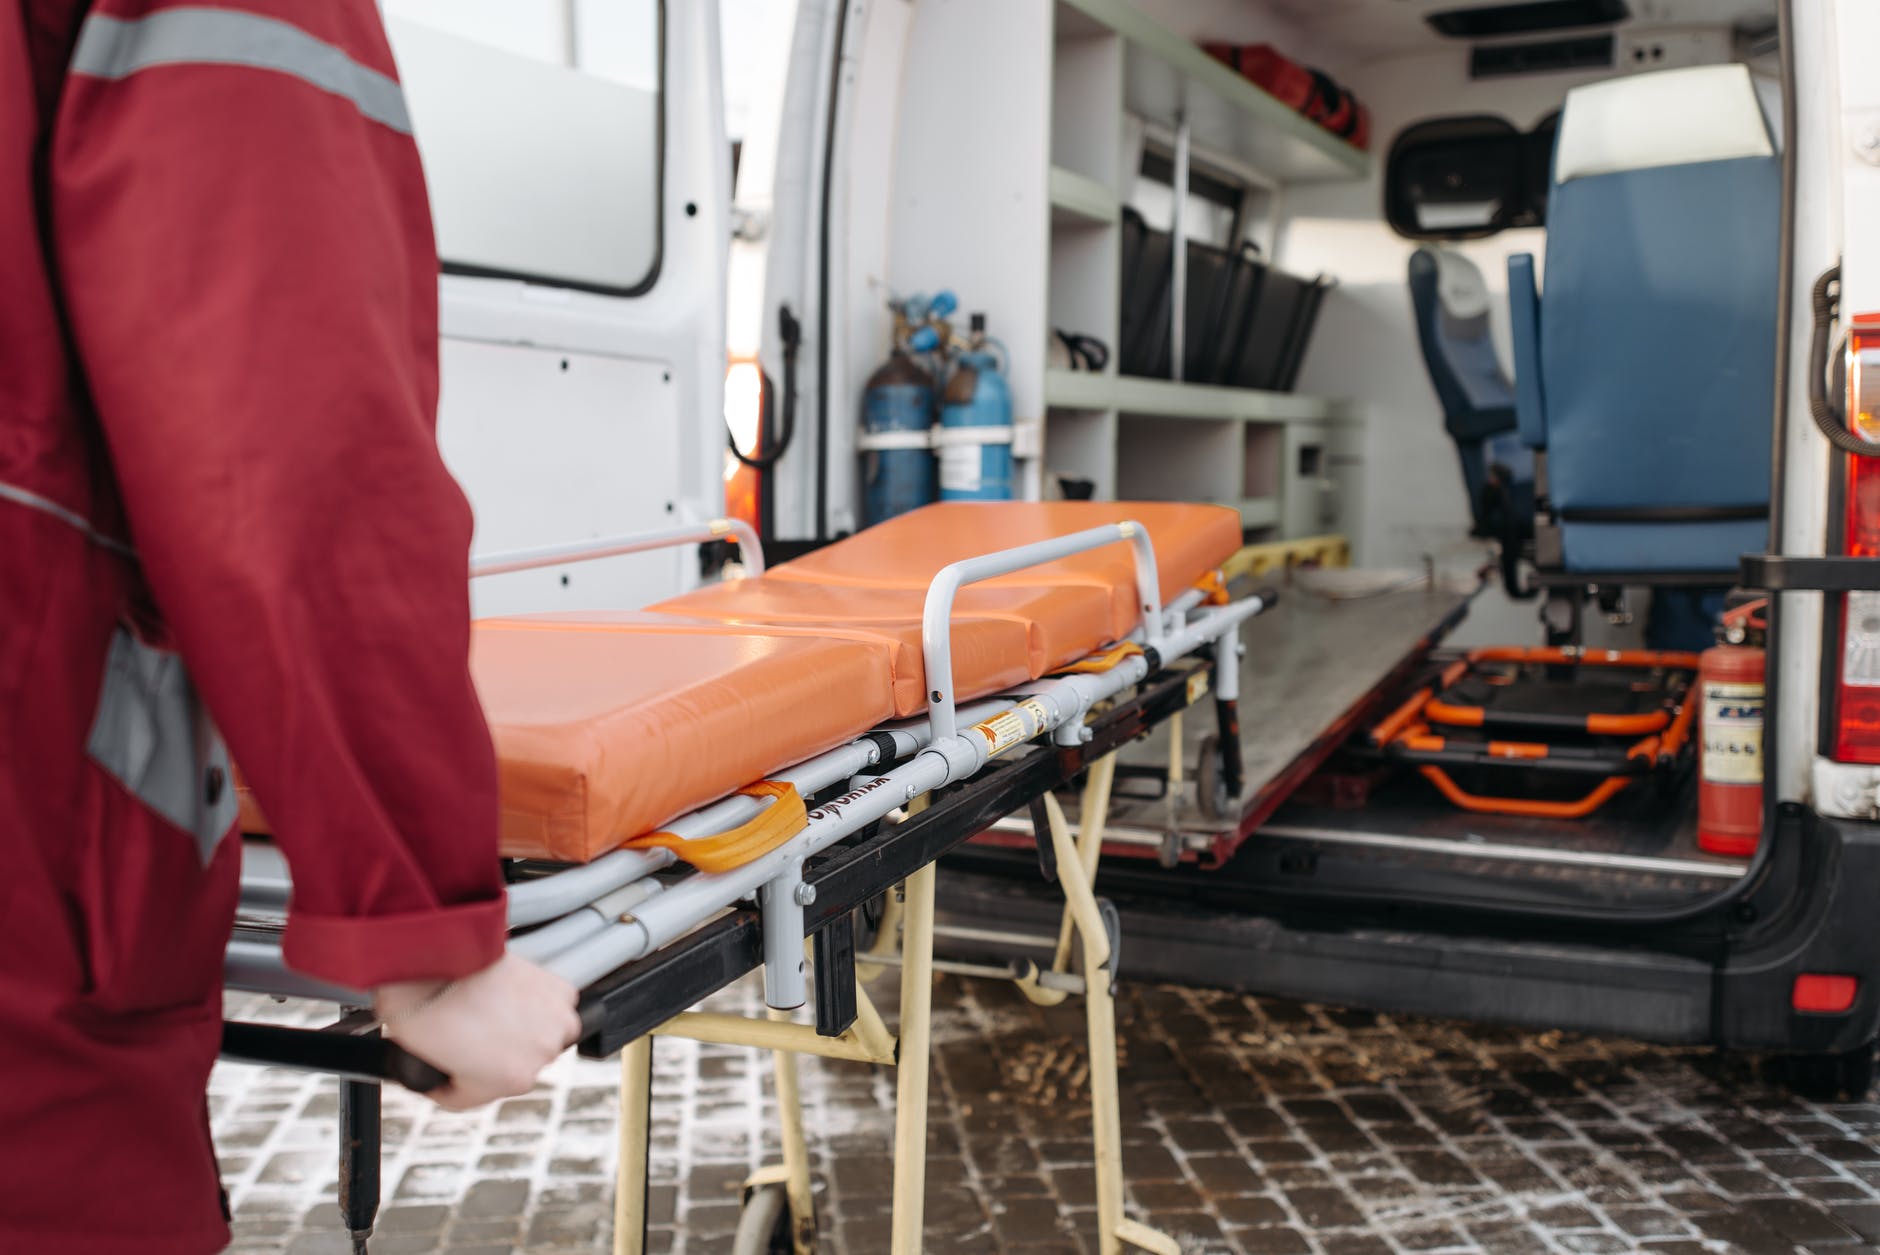 Persona guardando camilla en una ambulancia. | Foto: Pexels